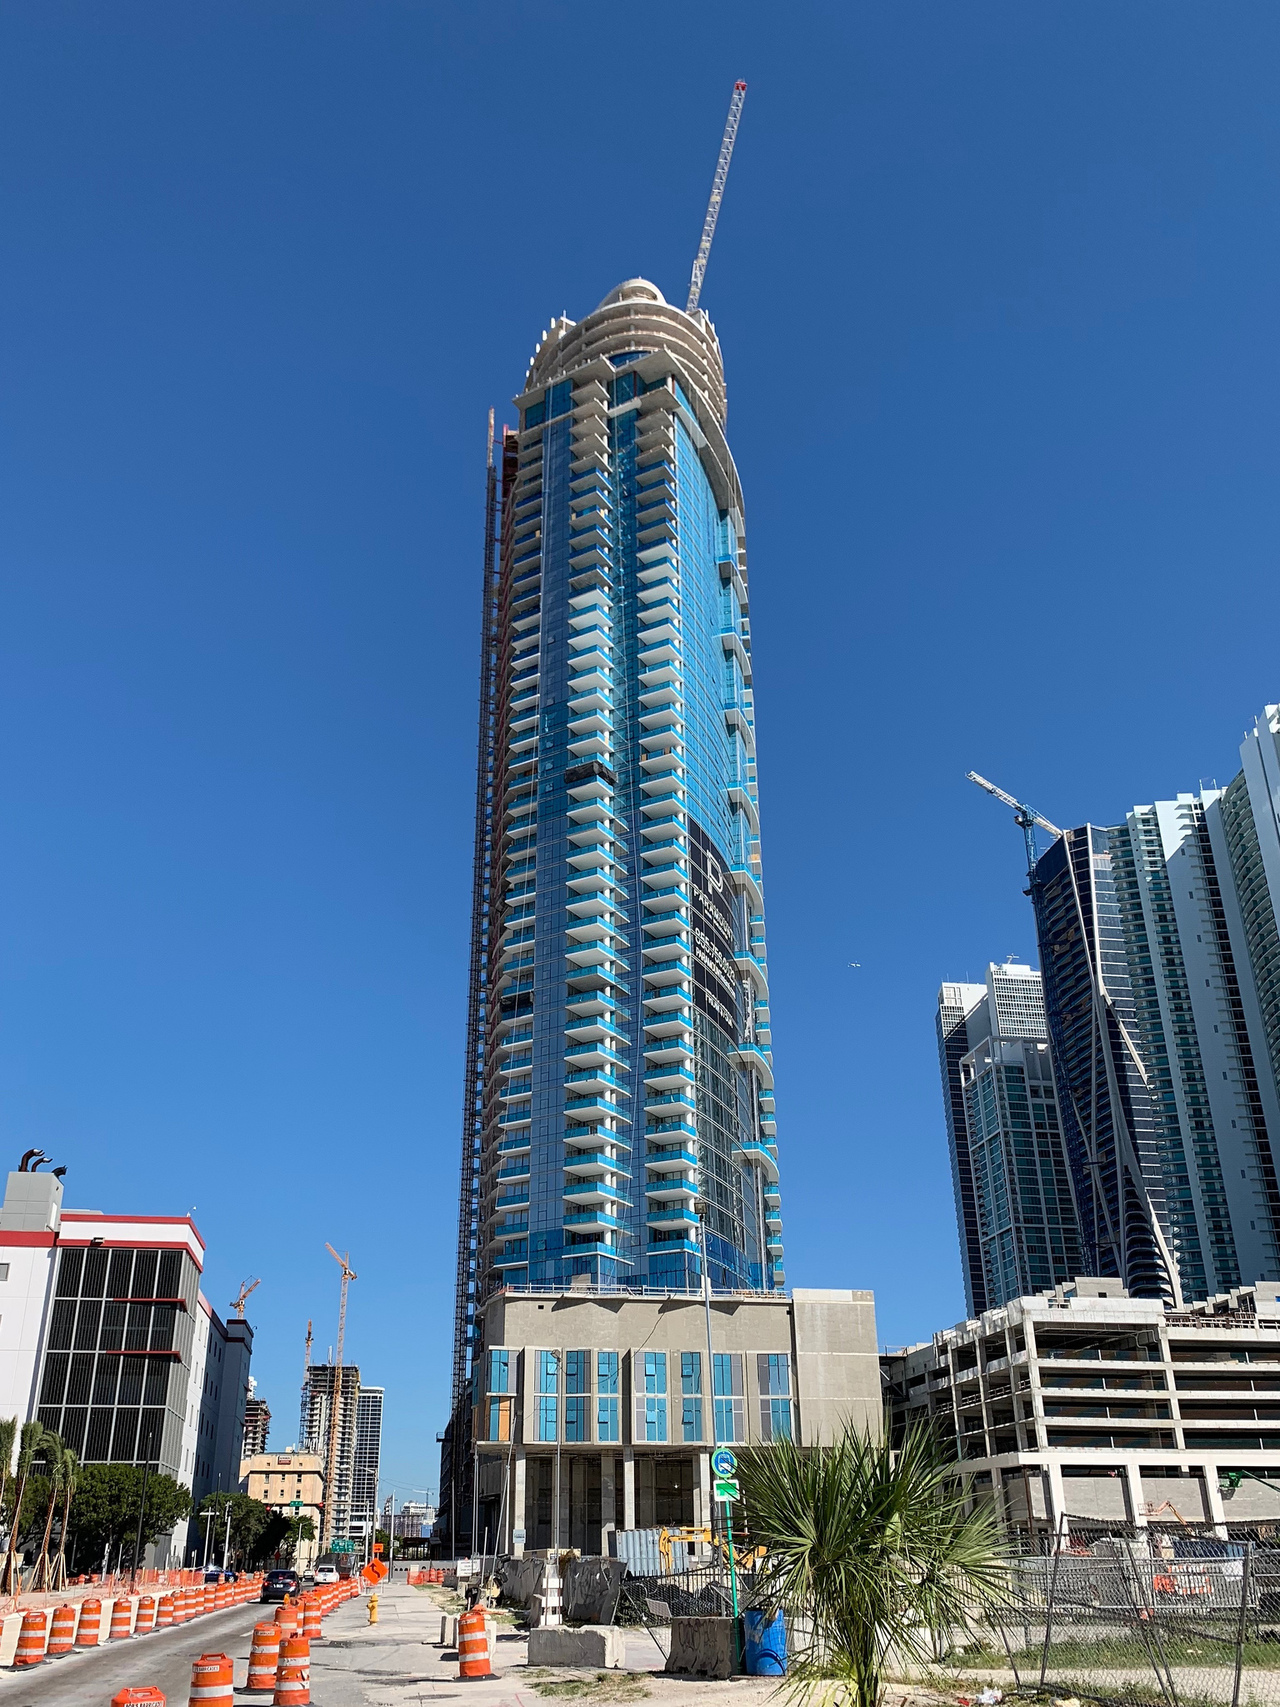 CAOBA - The Skyscraper Center